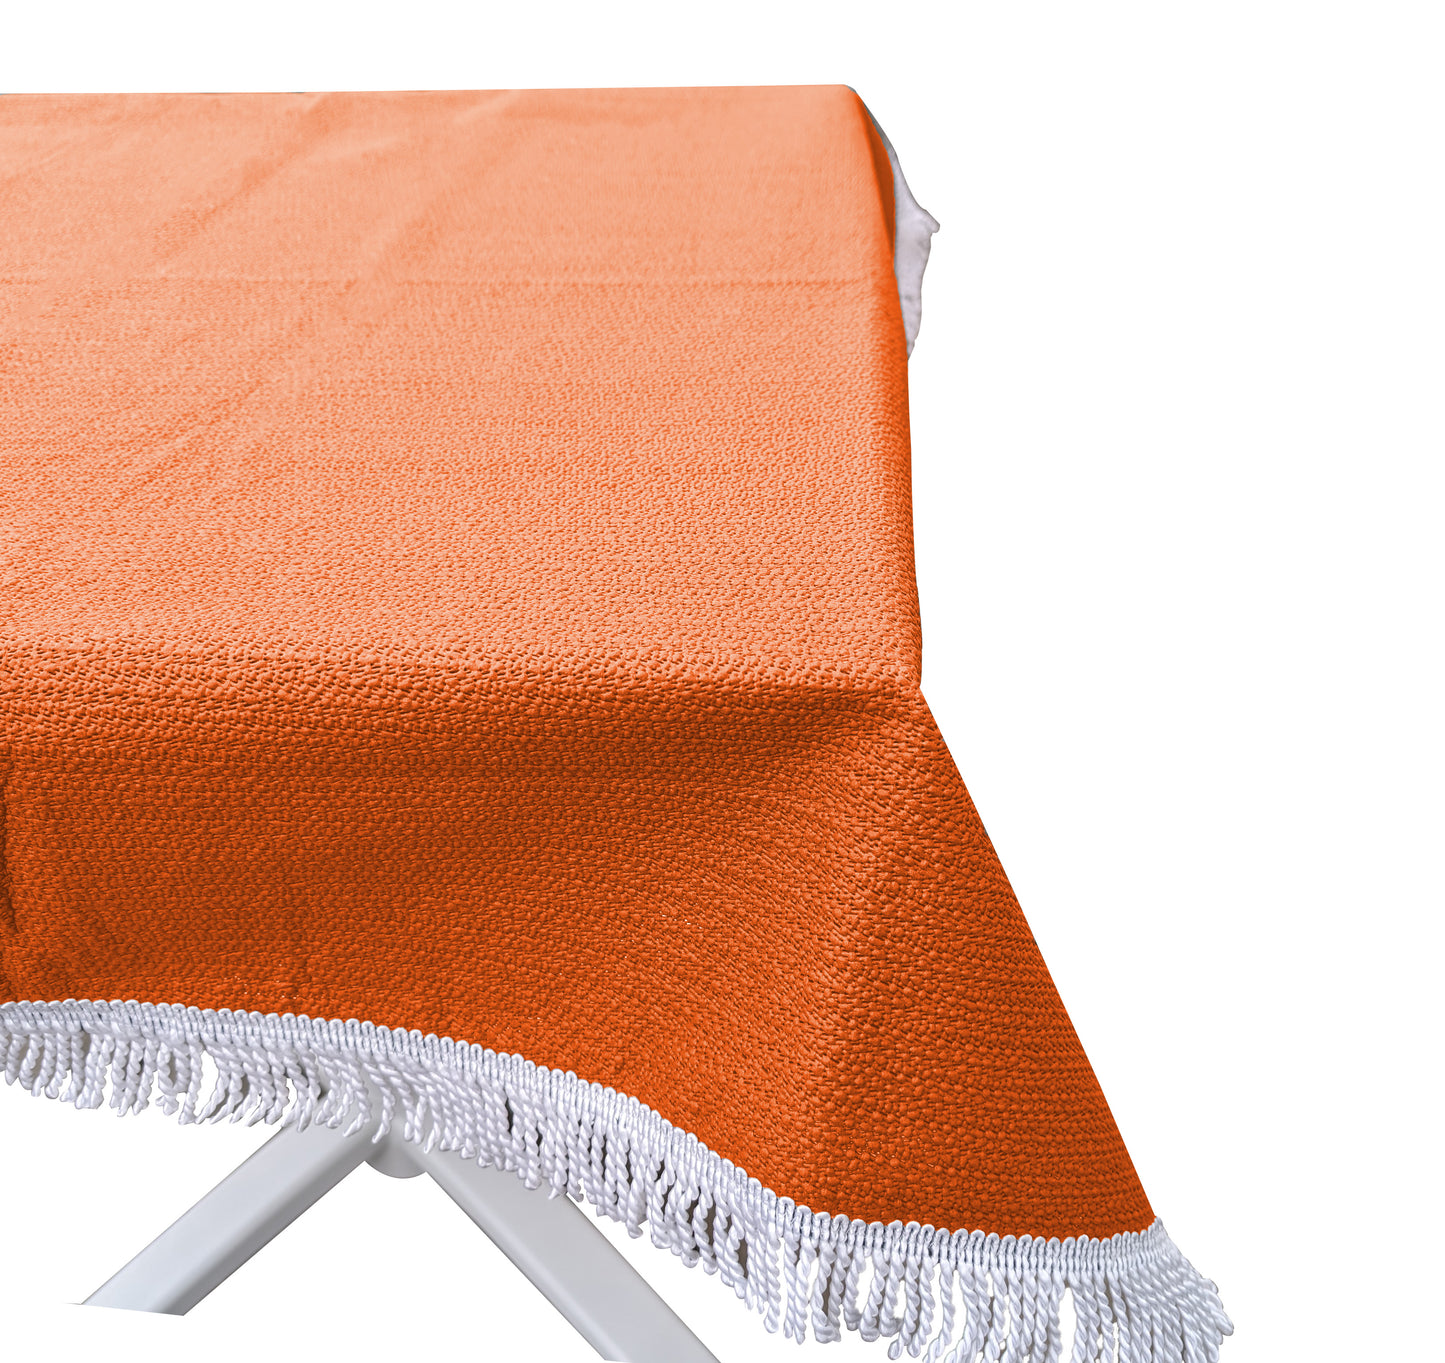 Gartentischdecke 100x130cm Eckig Orange  Weichschaum Witterungsbeständig  Wetterfest geschäumt  Pflegeleicht  abwaschbar